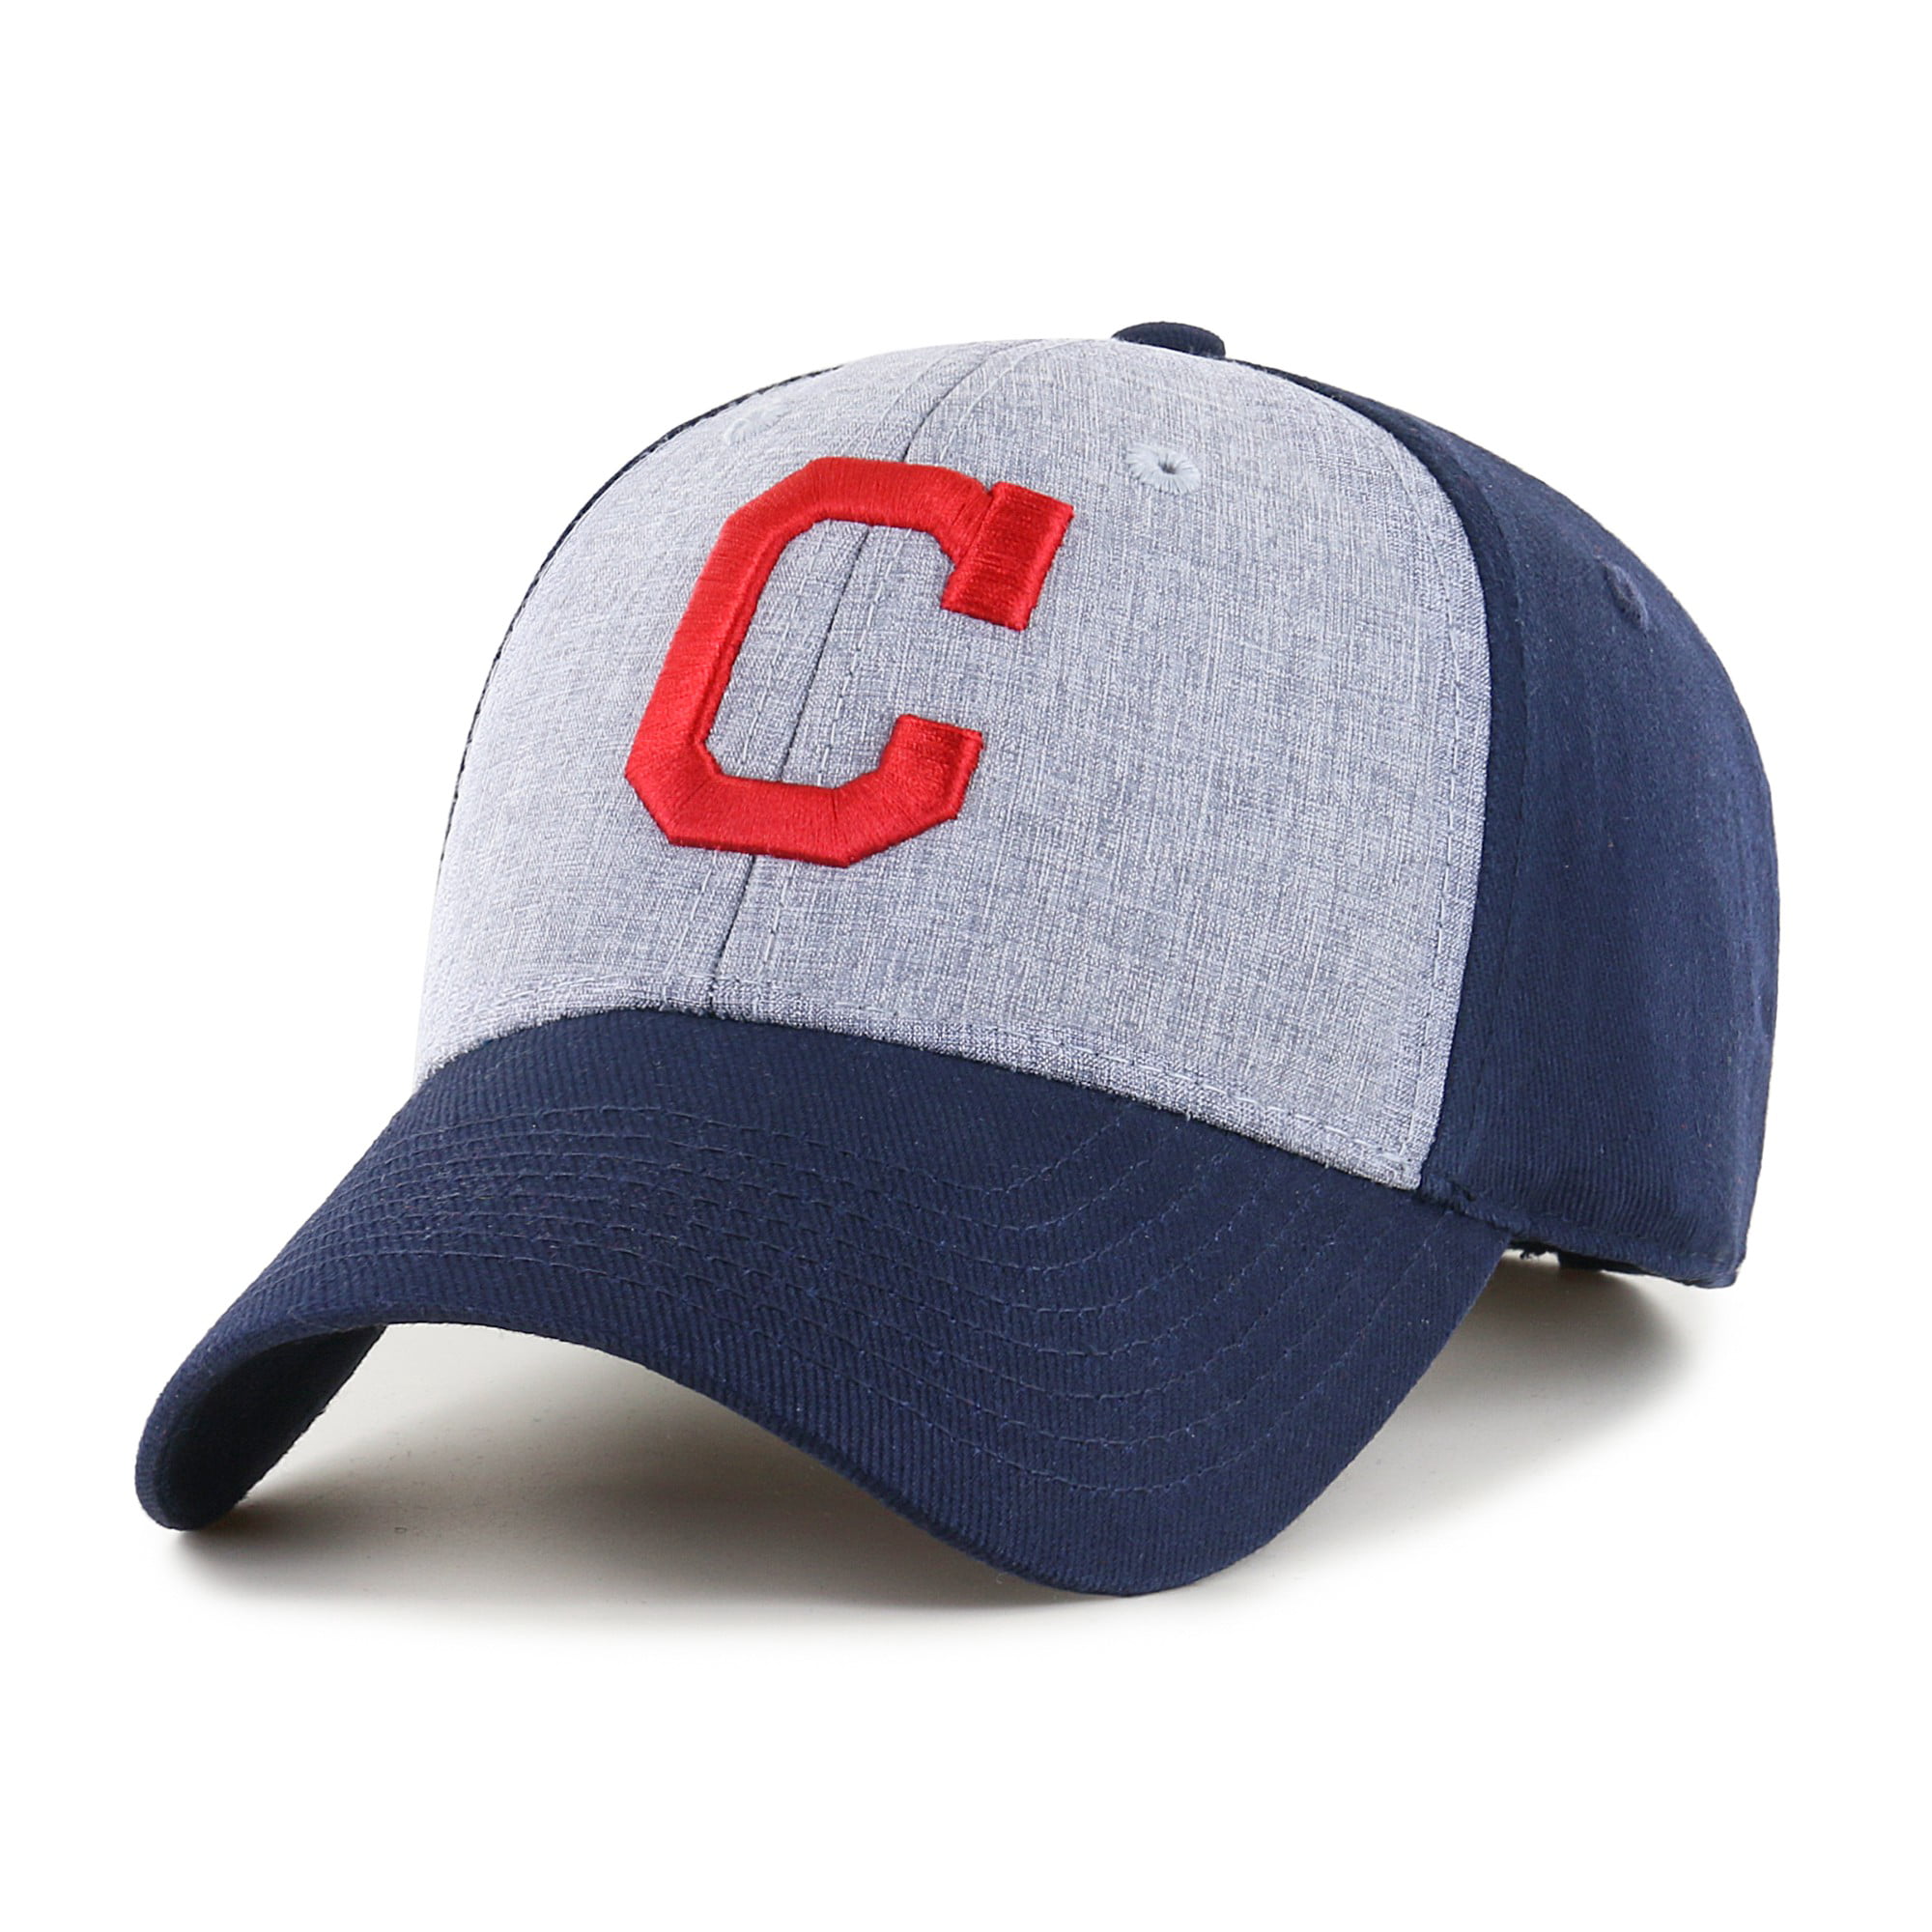 Fan Favorite Unisex MLB Essential Adjustable Hat, Cleveland Indians 